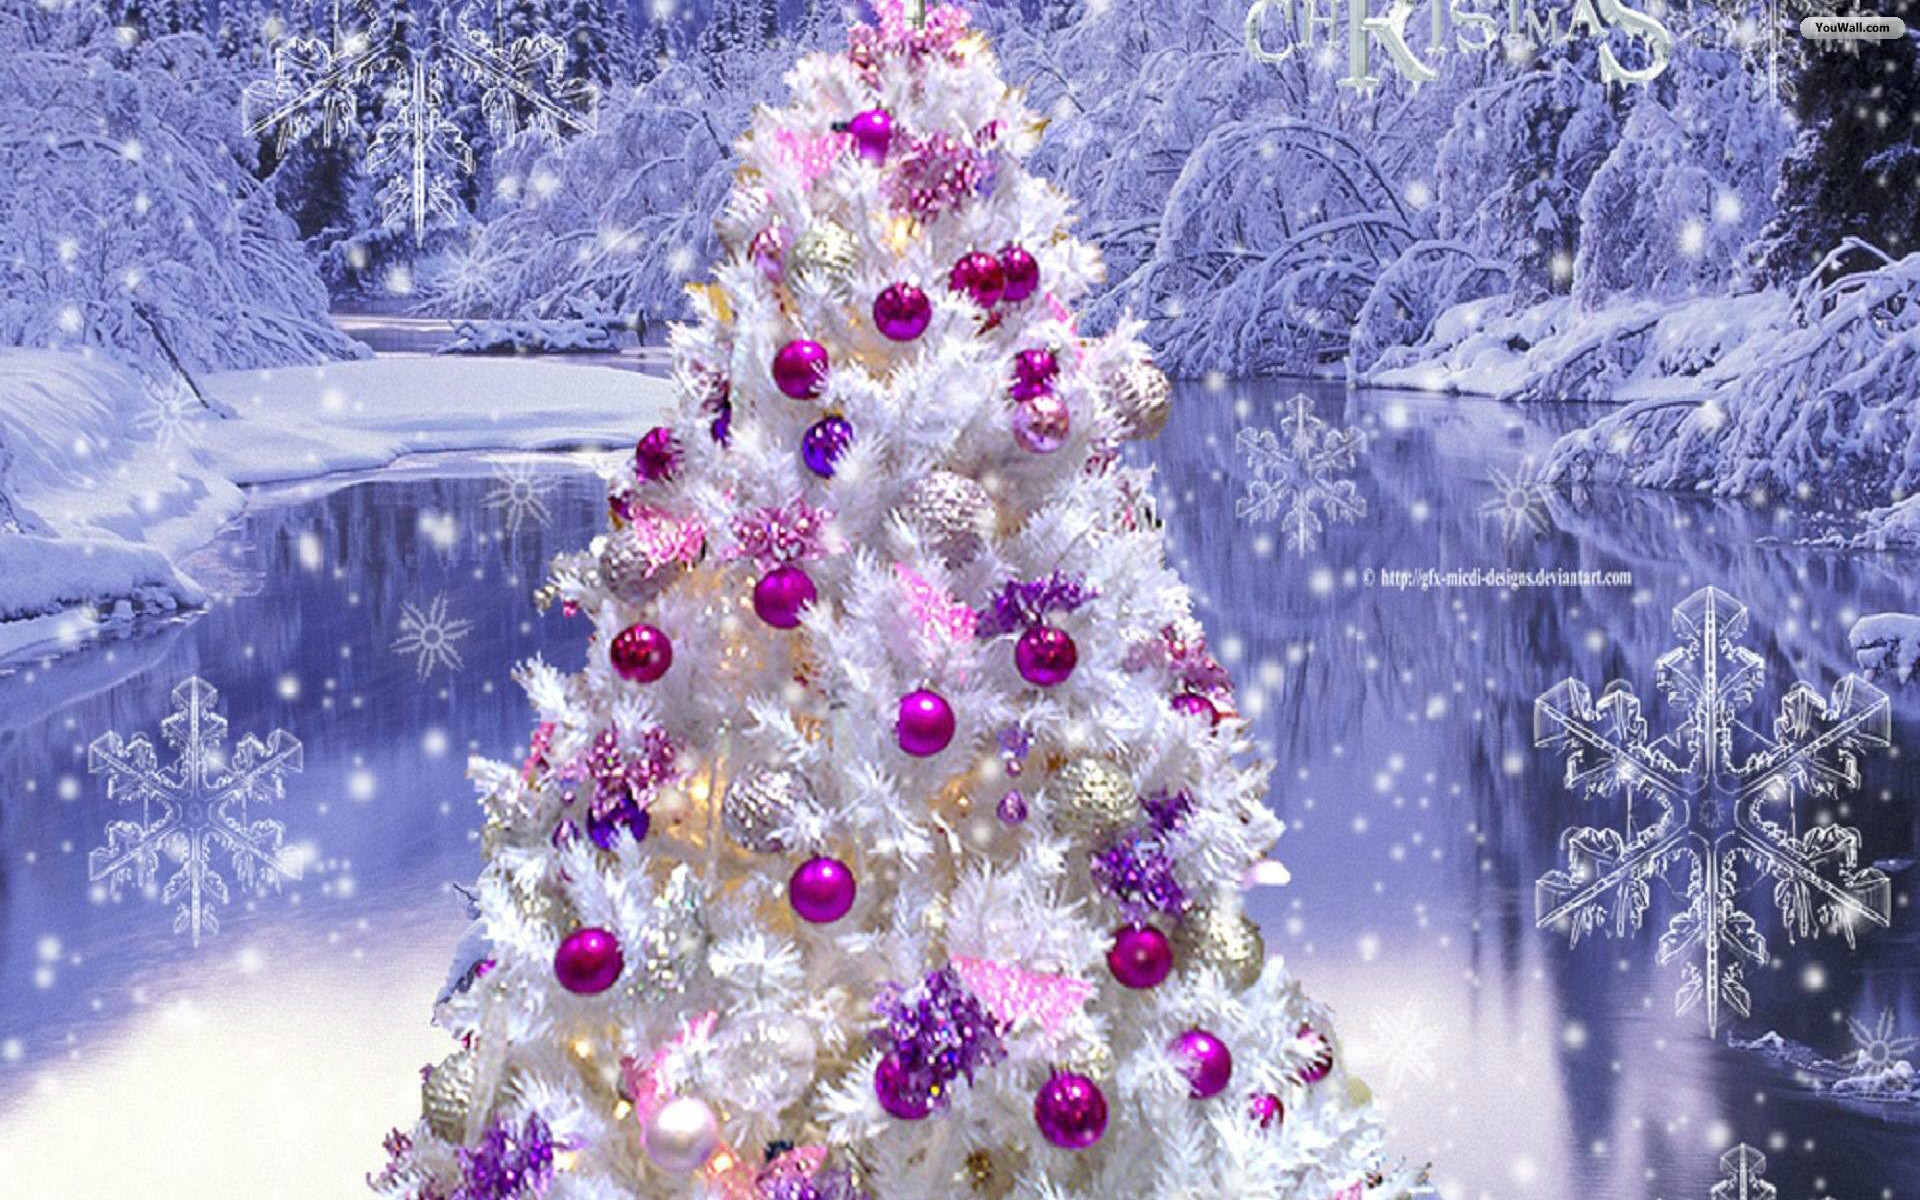 Giáng sinh cũng đồng nghĩa với niềm vui, niềm hạnh phúc. Hãy cùng khuấy động không khí lễ hội bằng việc tải về những bức hình nền Giáng sinh miễn phí! Tổng hợp từ nhiều nguồn khác nhau, các hình nền thể hiện đầy đủ ý nghĩa của mùa lễ hội, hứa hẹn sẽ làm lòng người xem hưng phấn và đắm chìm trong không khí Giáng sinh tràn đầy niềm vui.